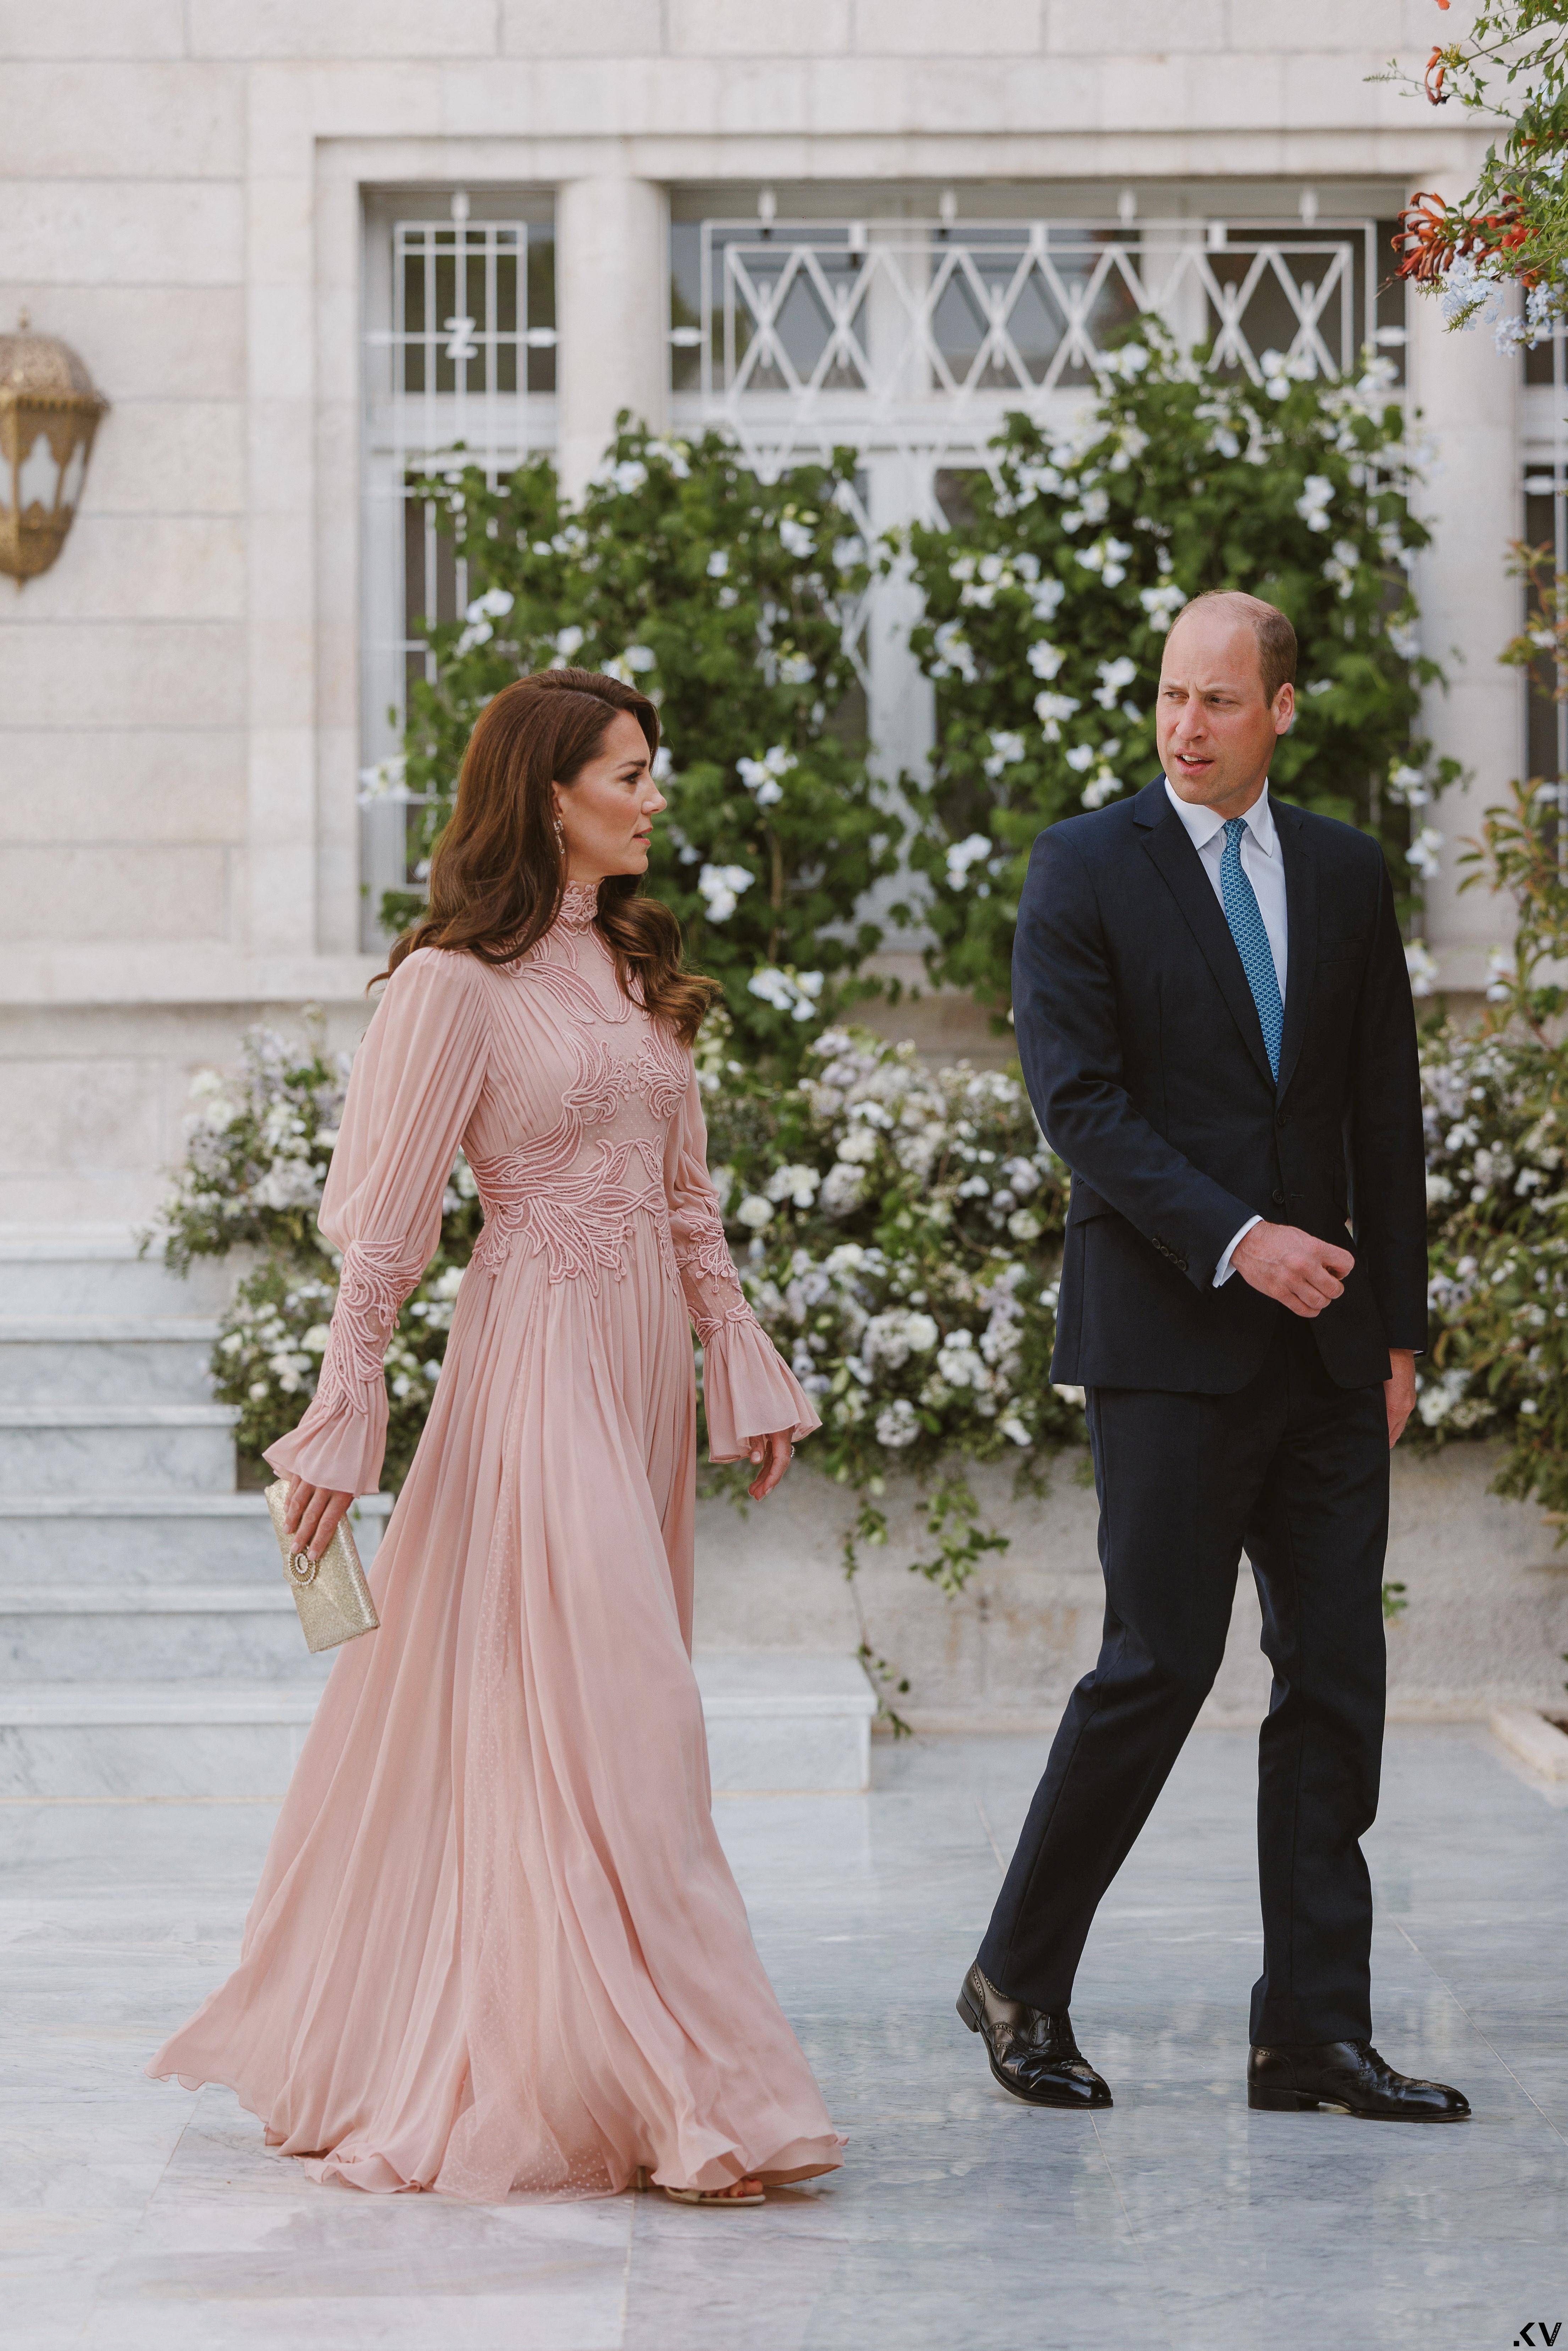 约旦王储迎娶阿拉伯富豪千金　新娘绝美白纱和凯特王妃撞同牌 时尚穿搭 图6张